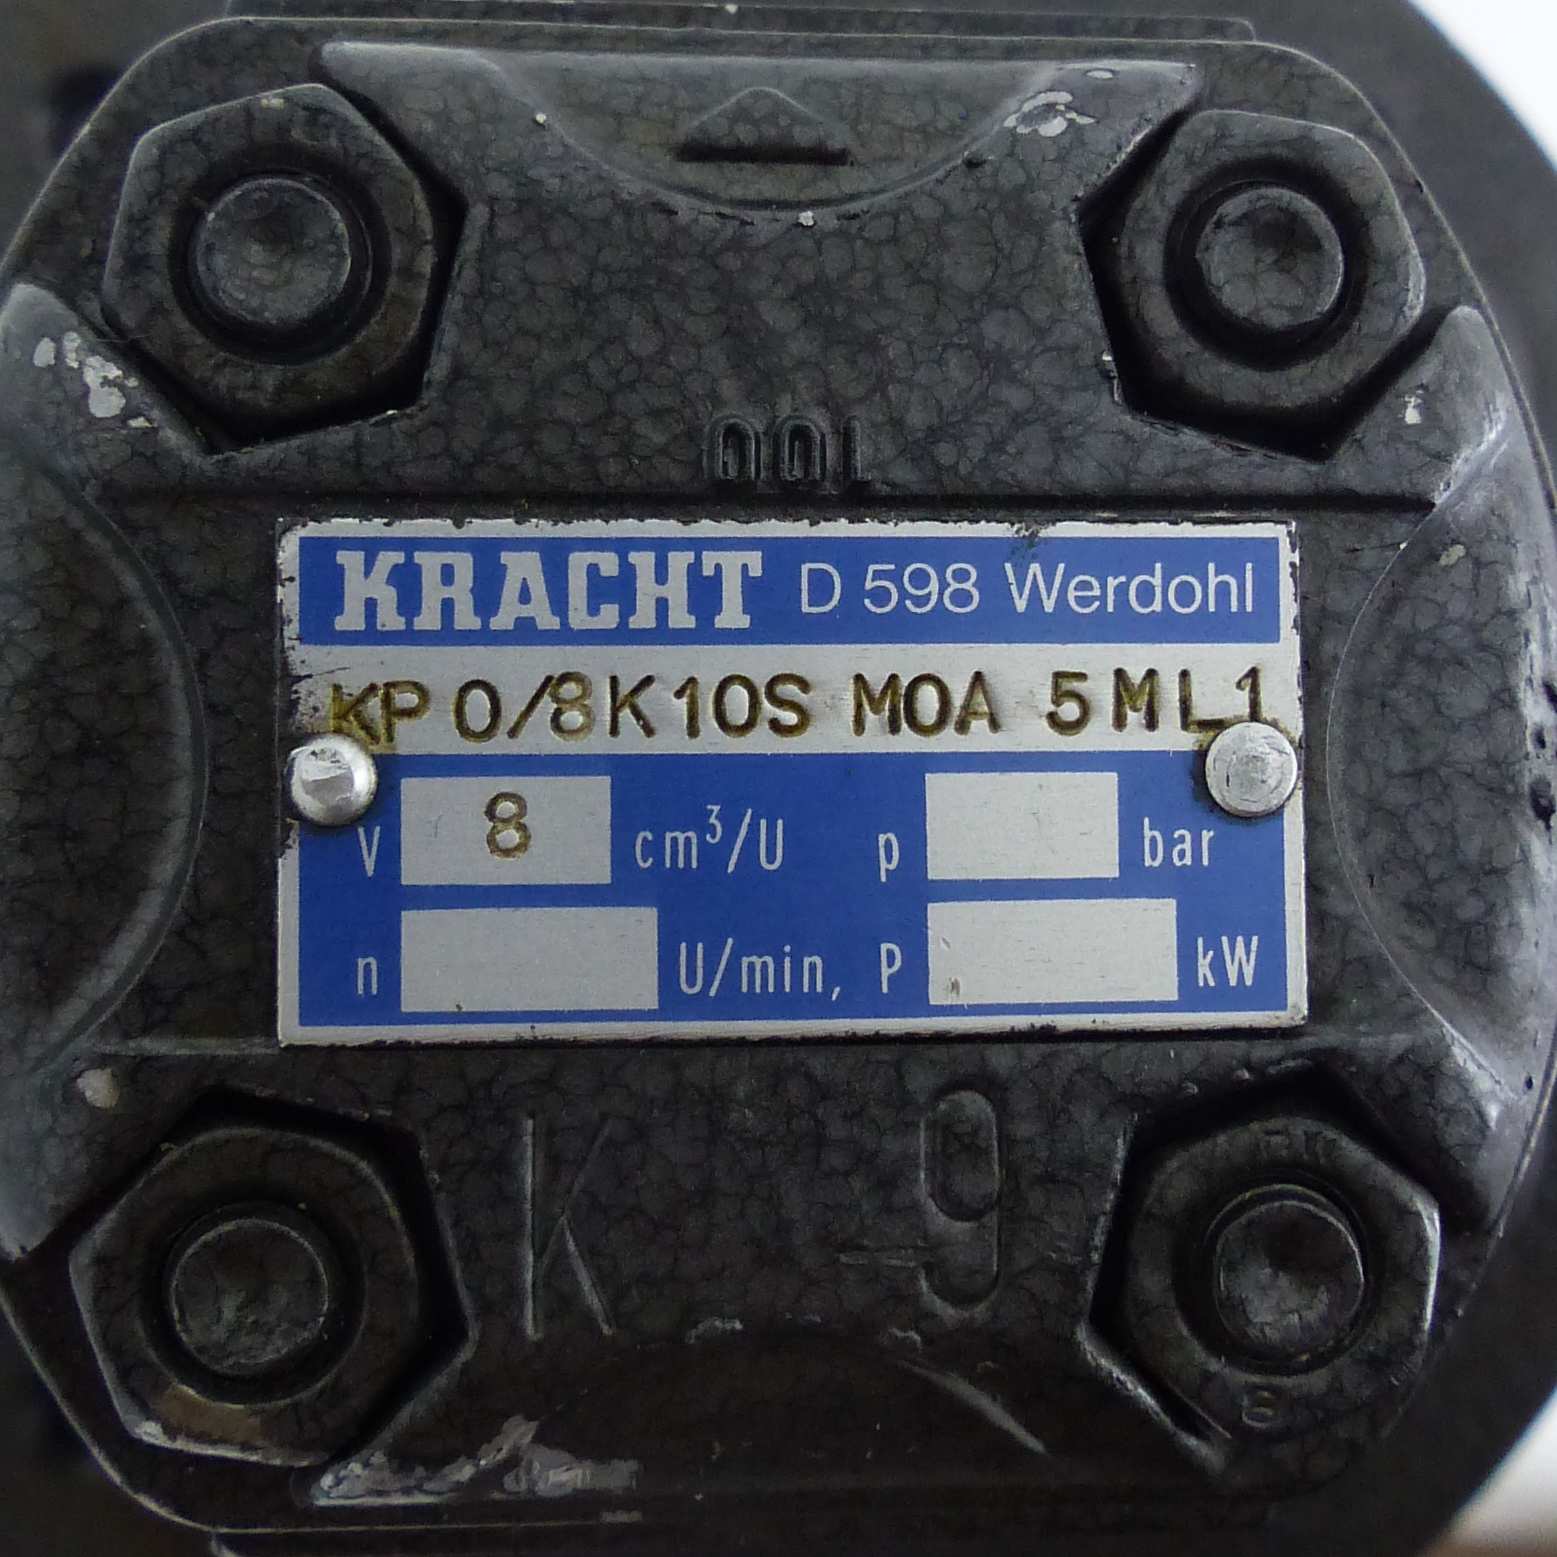 High pressure gear Pump KP 0/8K10S M0A 5ML1 